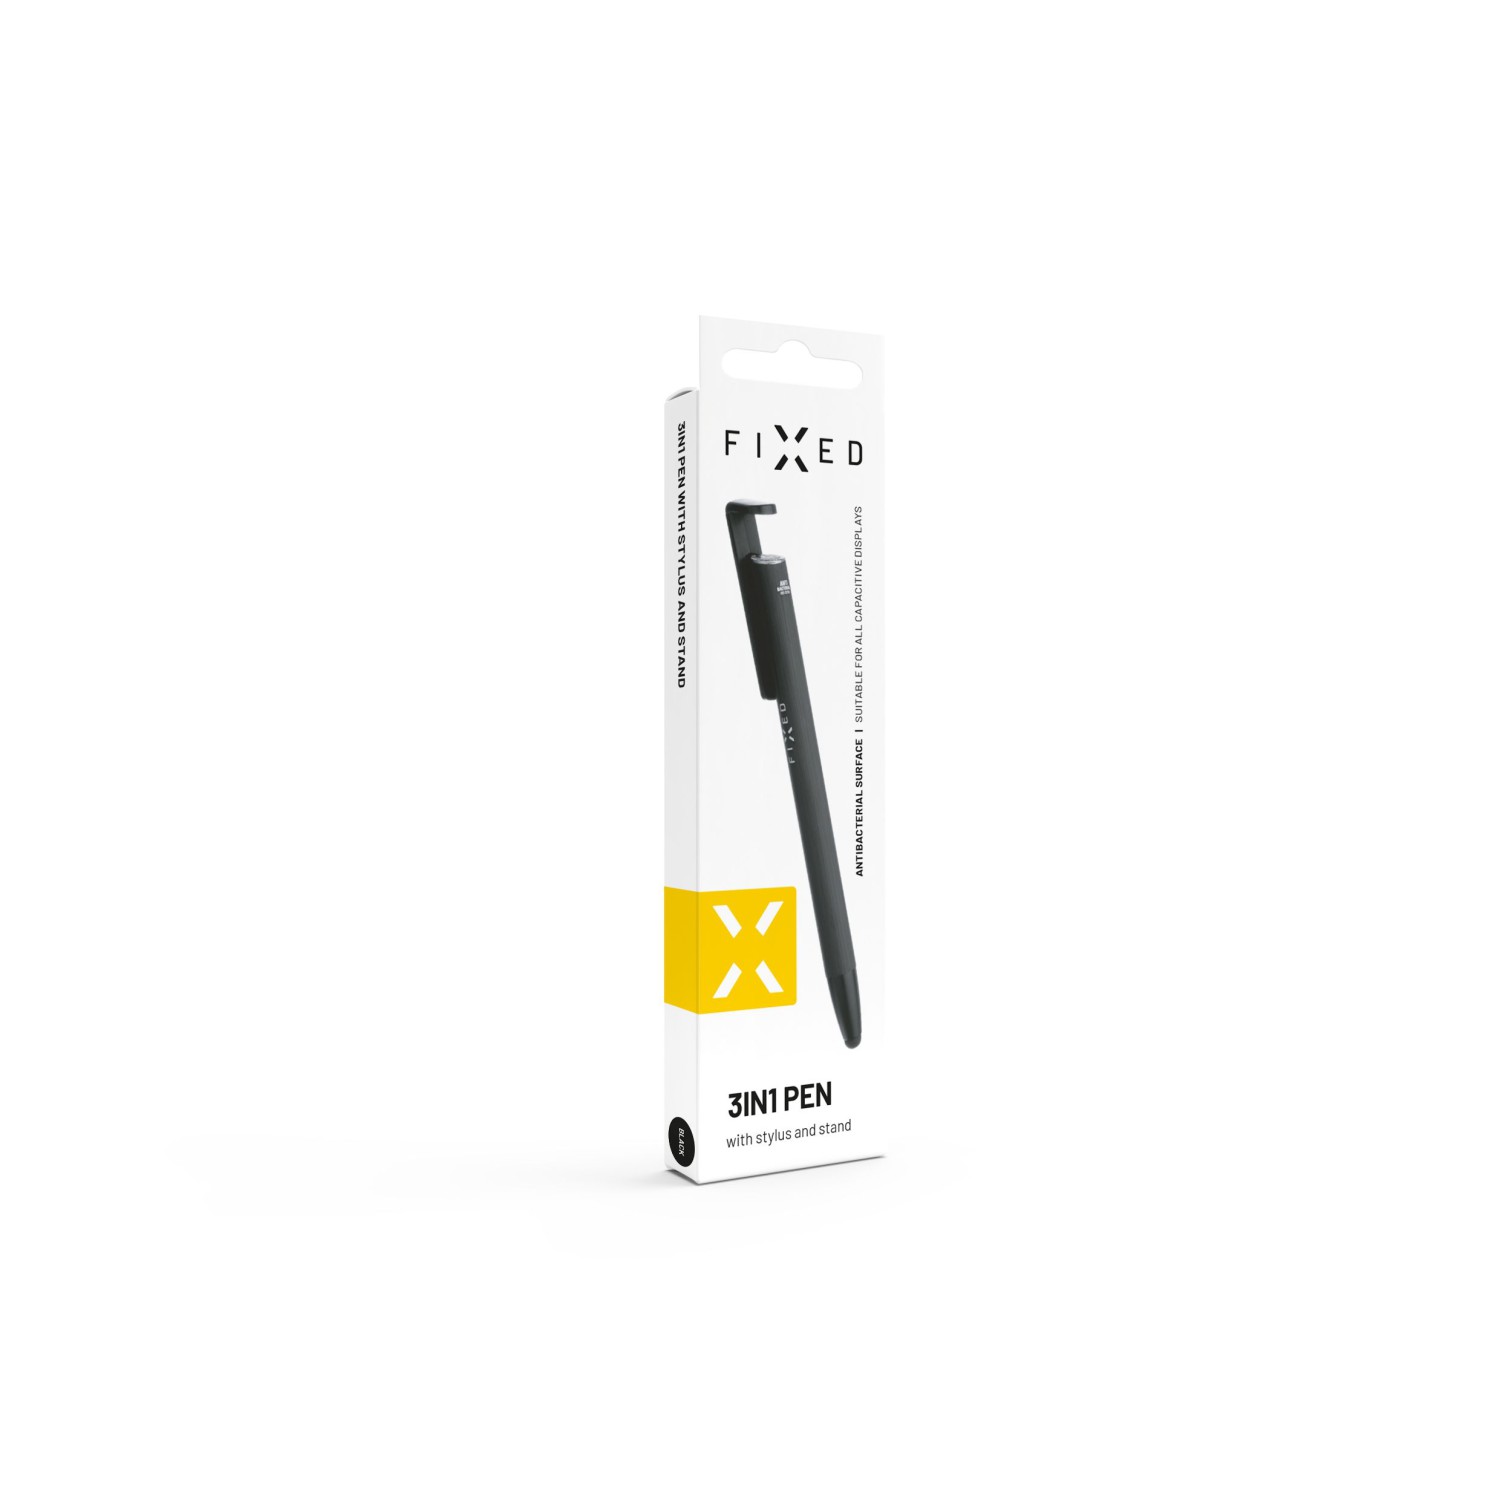 FIXED Pen 3v1 písacie pero so stylusom a stojanom, antibakteriálny povrch, hliníkové telo, čierna